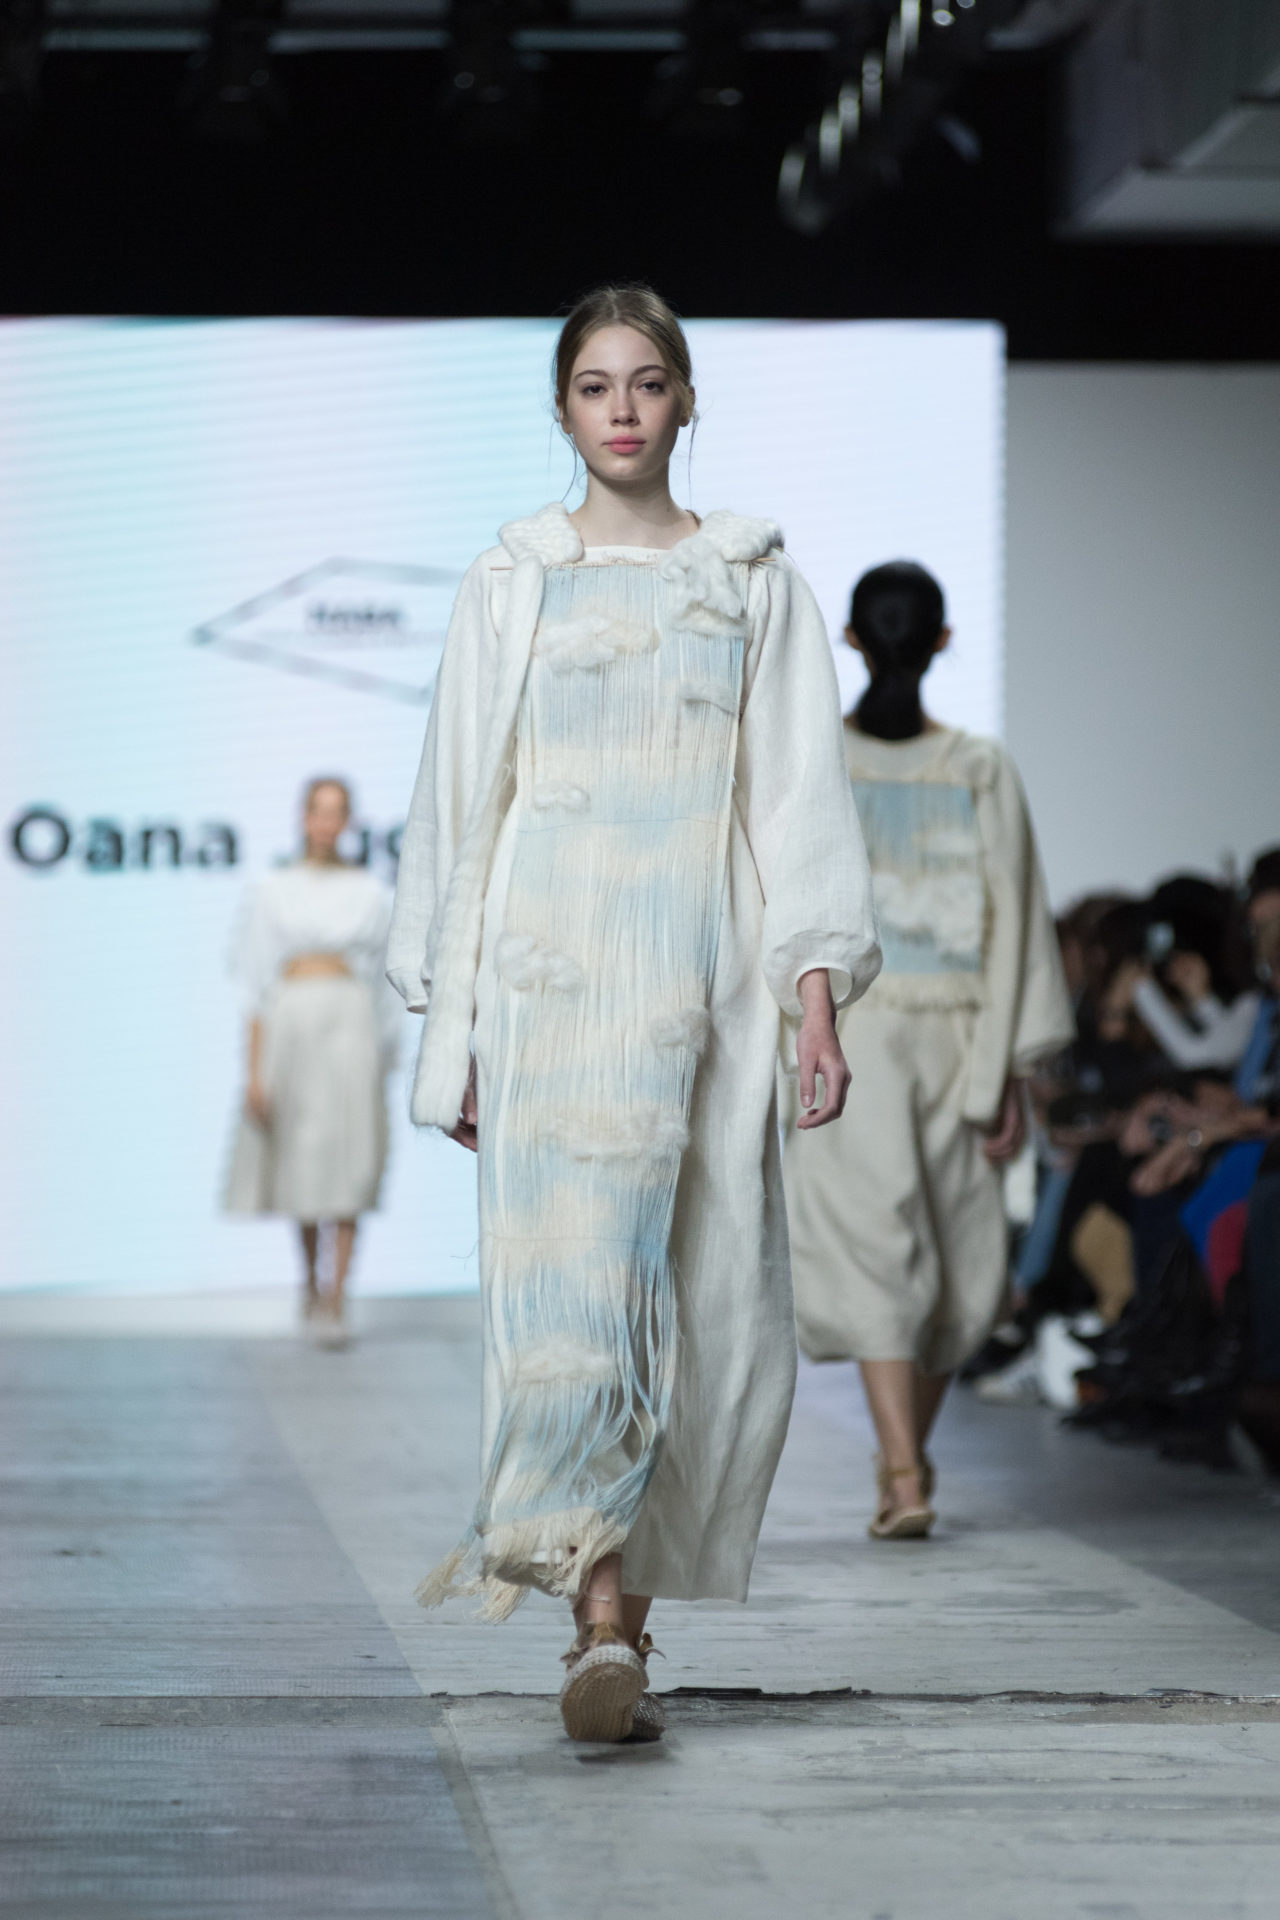 Fashion Designer: Oana Juganaru -Fashion Graduate Italia Fashion Show - NABA